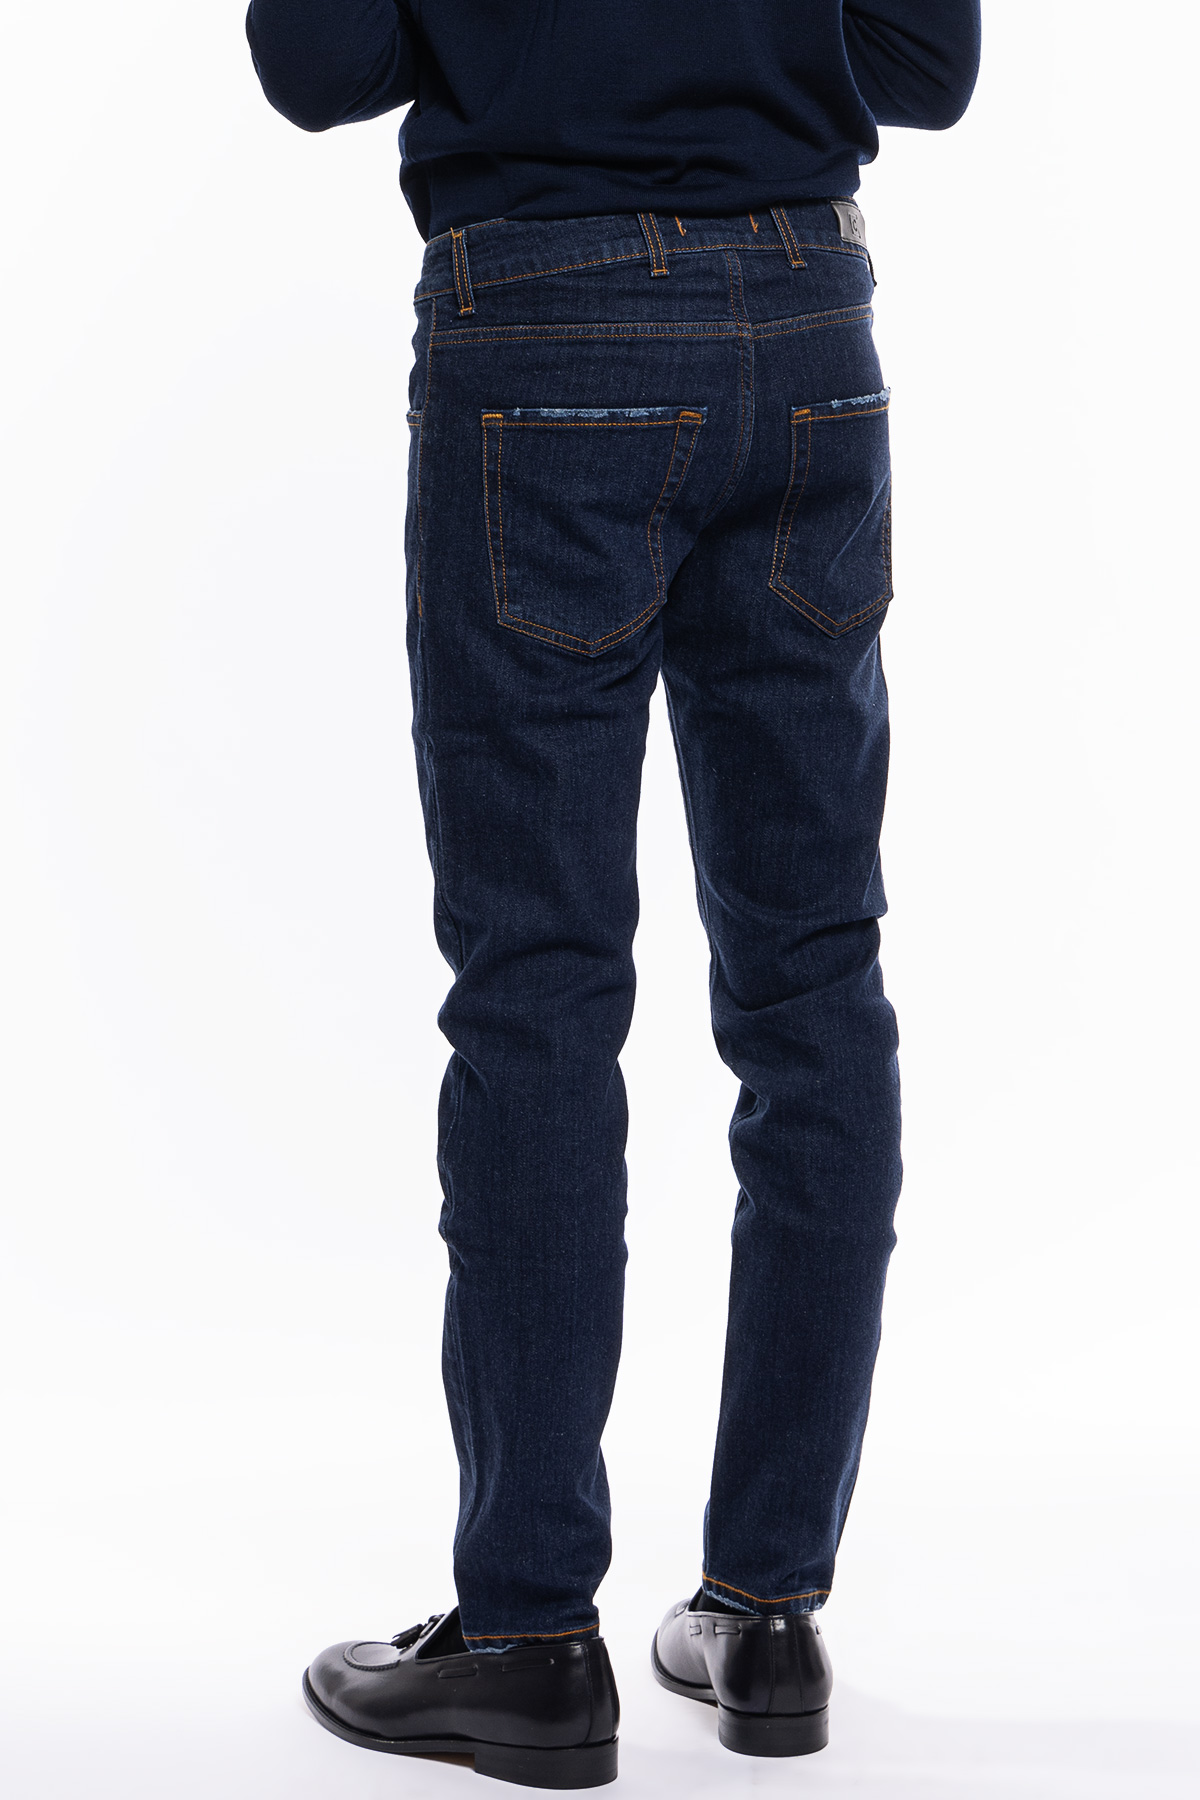 Jeans uomo lavaggio zero tinta unita modello 5 tasche slim fit made in italy